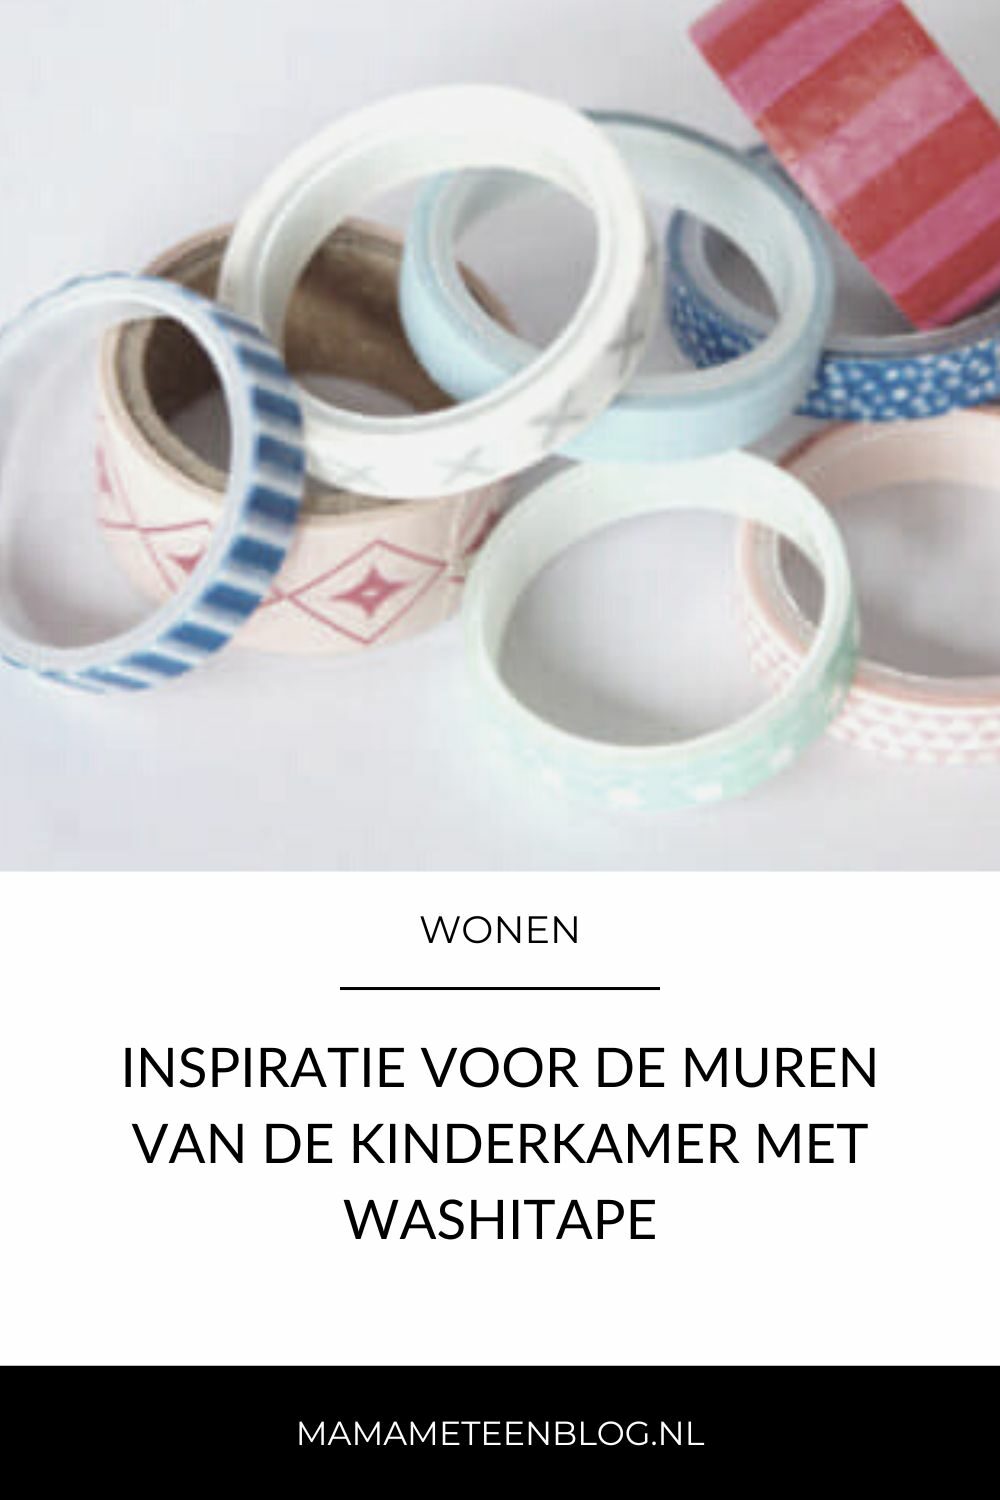 Inspiratie voor de muren van de kinderkamer met washitape  mamameteenblog.nl